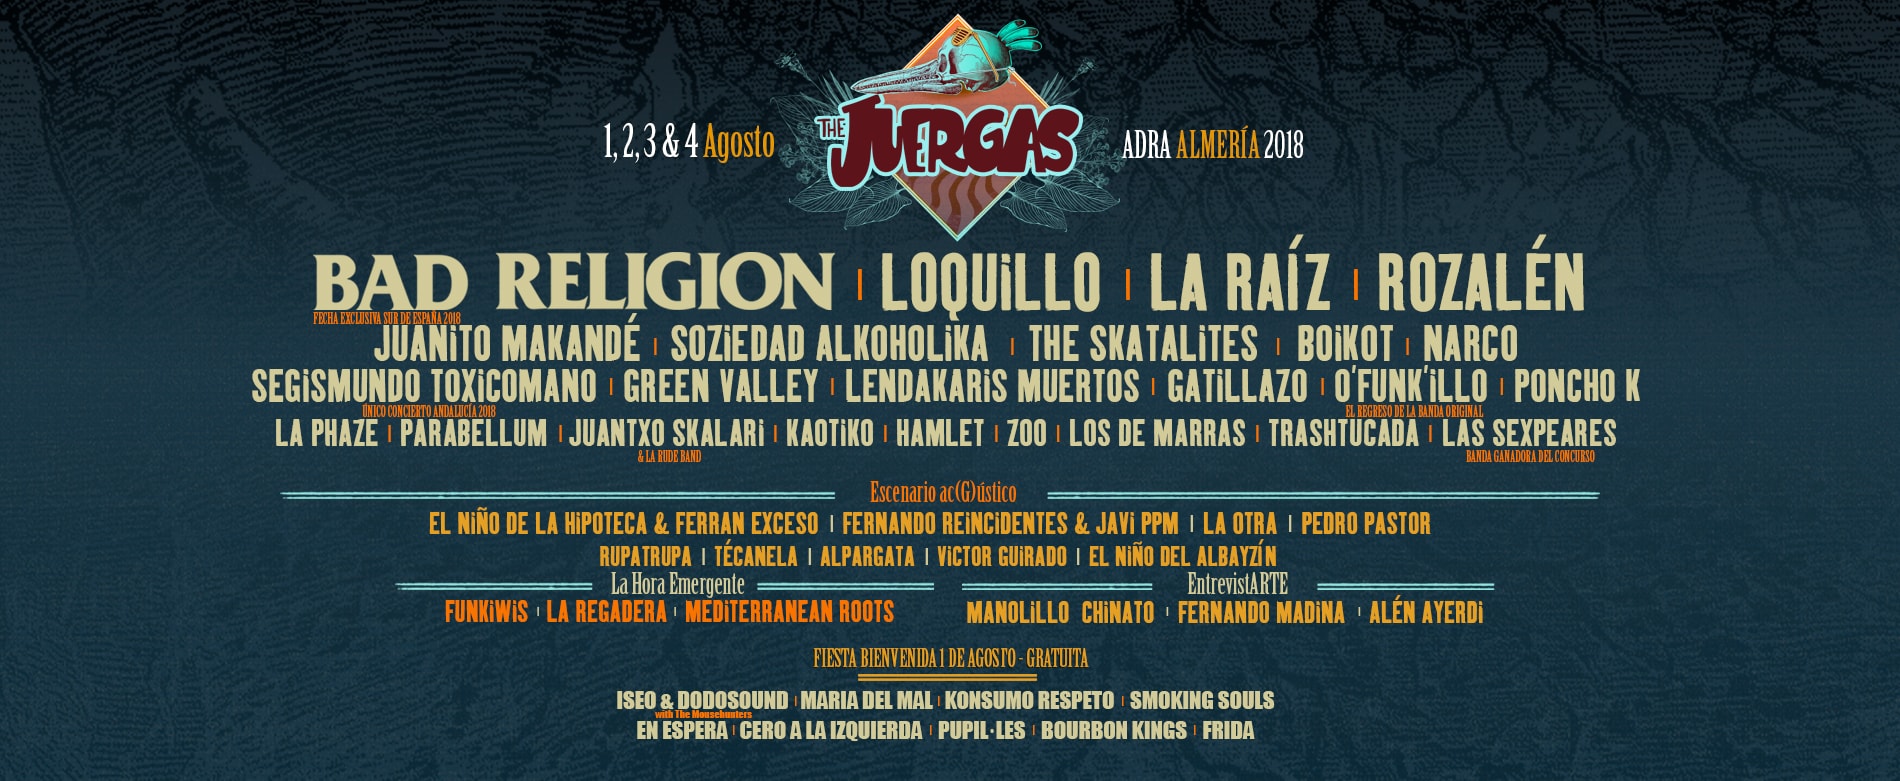 Comença l’agost… amb el Juergas Rock Festival!